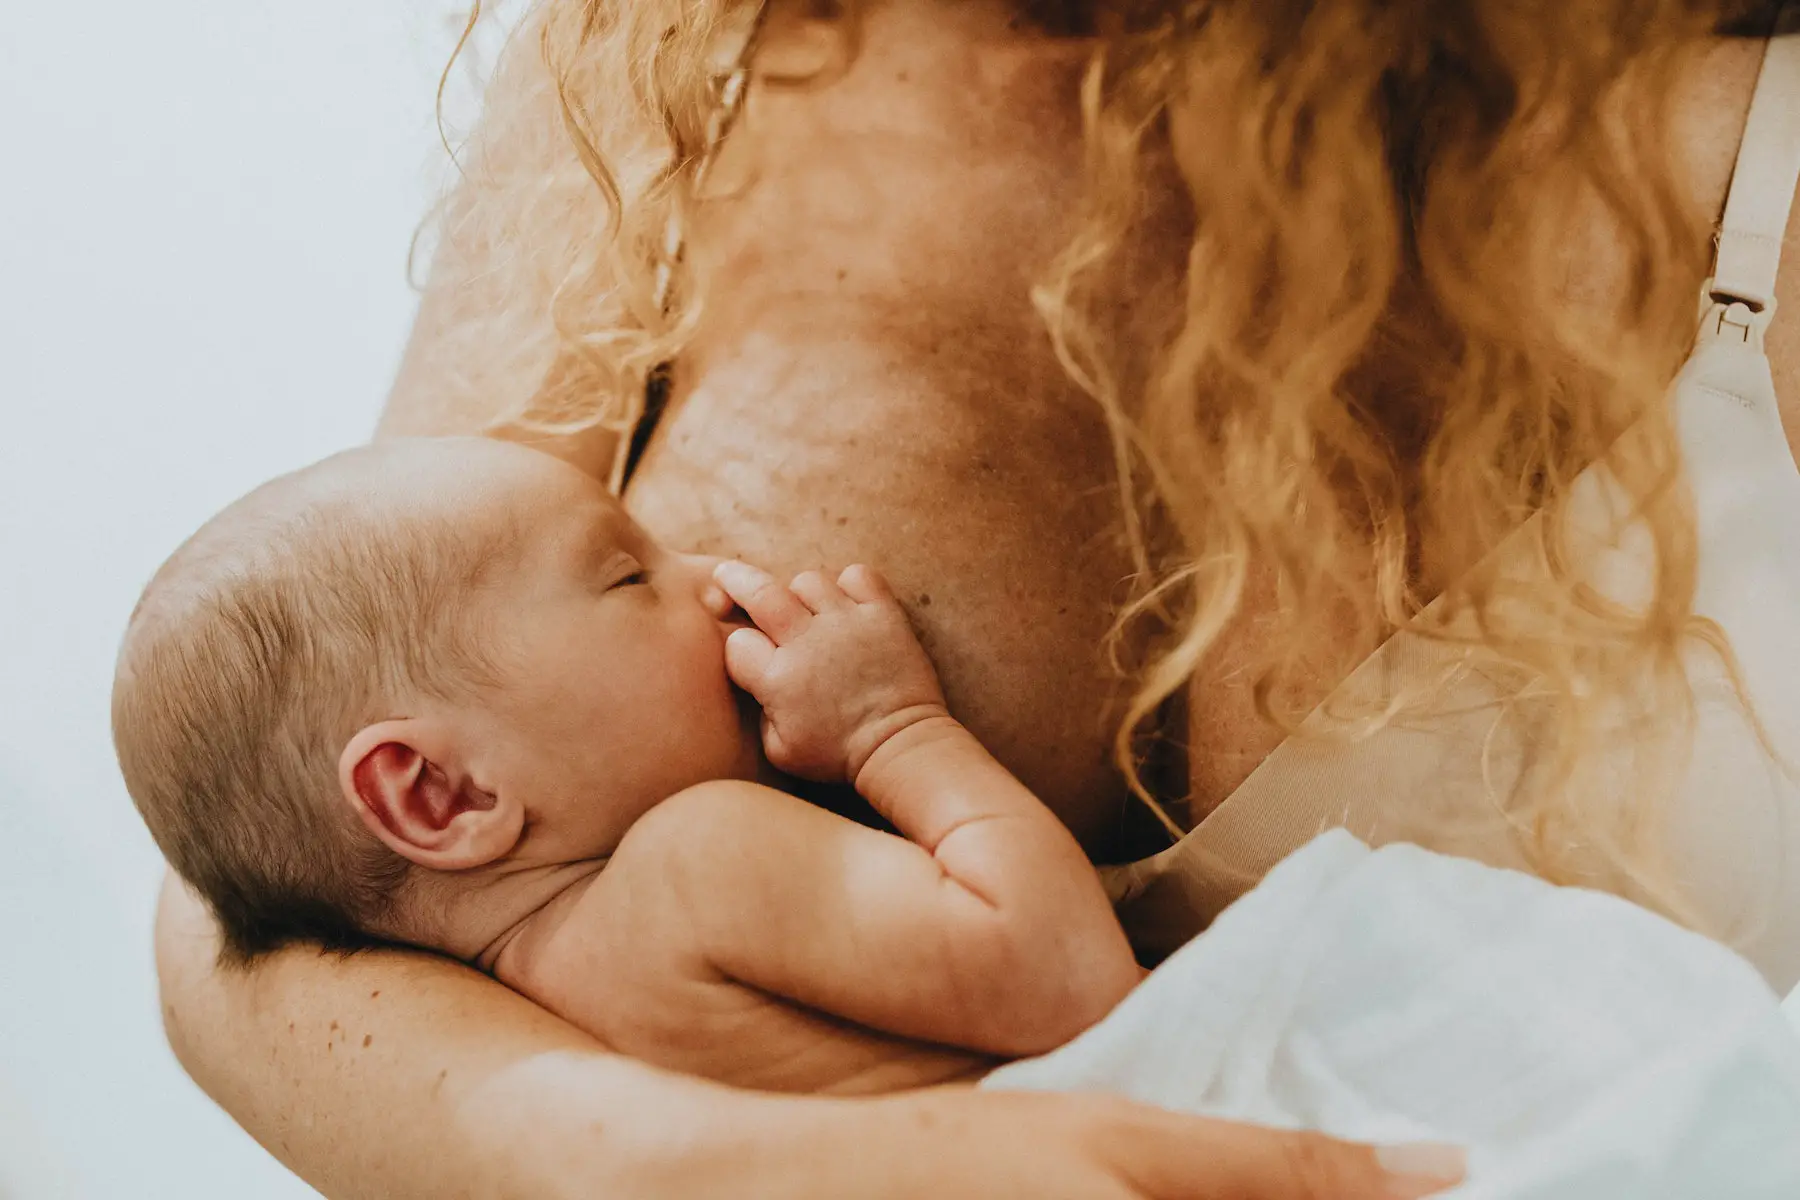 Dutch woman breastfeeding baby